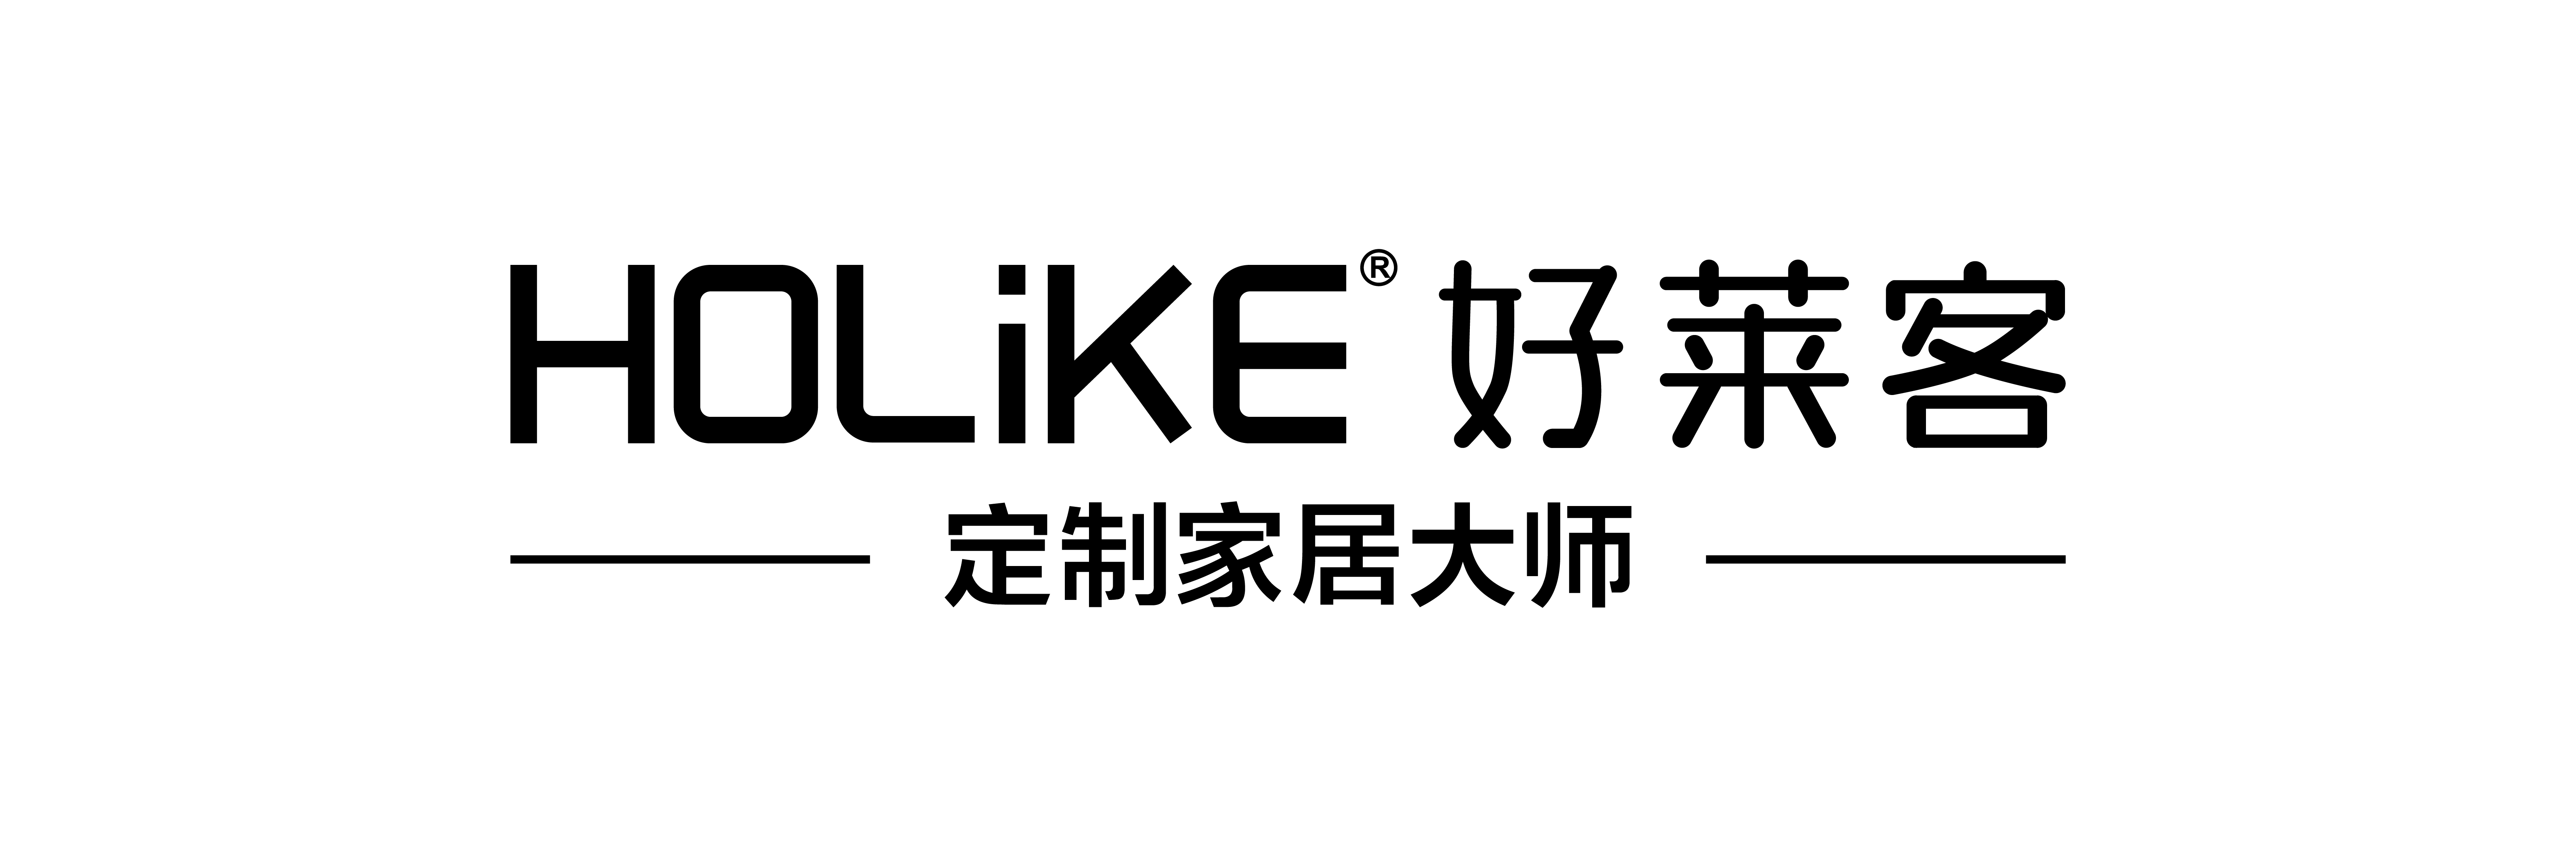 好莱客logo商标图片